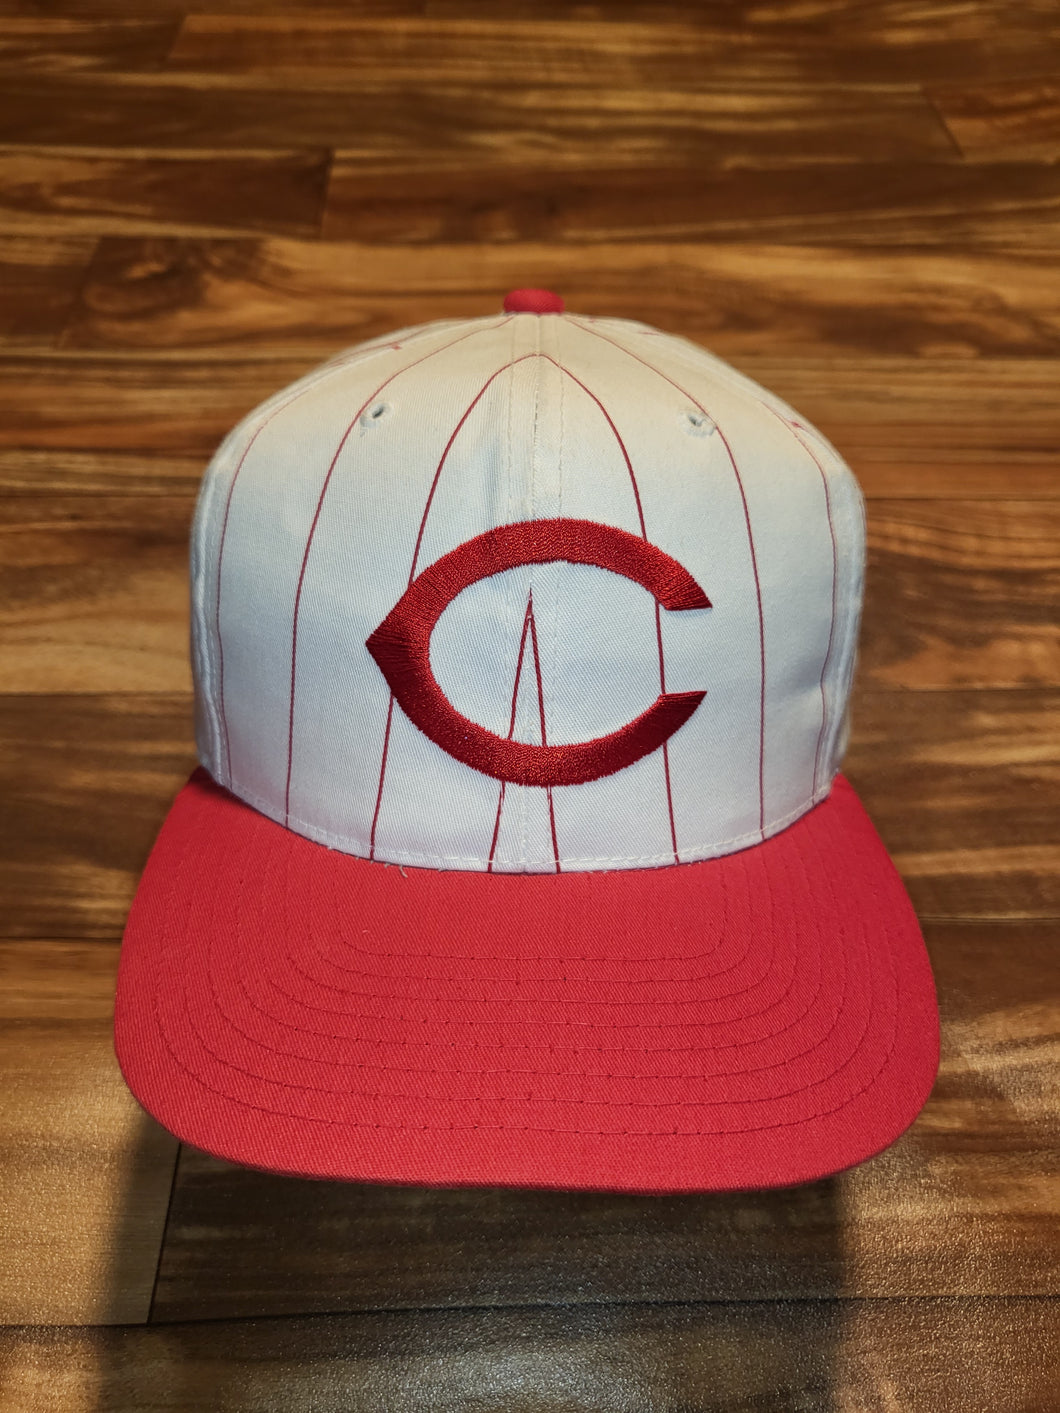 Vintage Cincinnati Reds MLB Pinstripe Hat